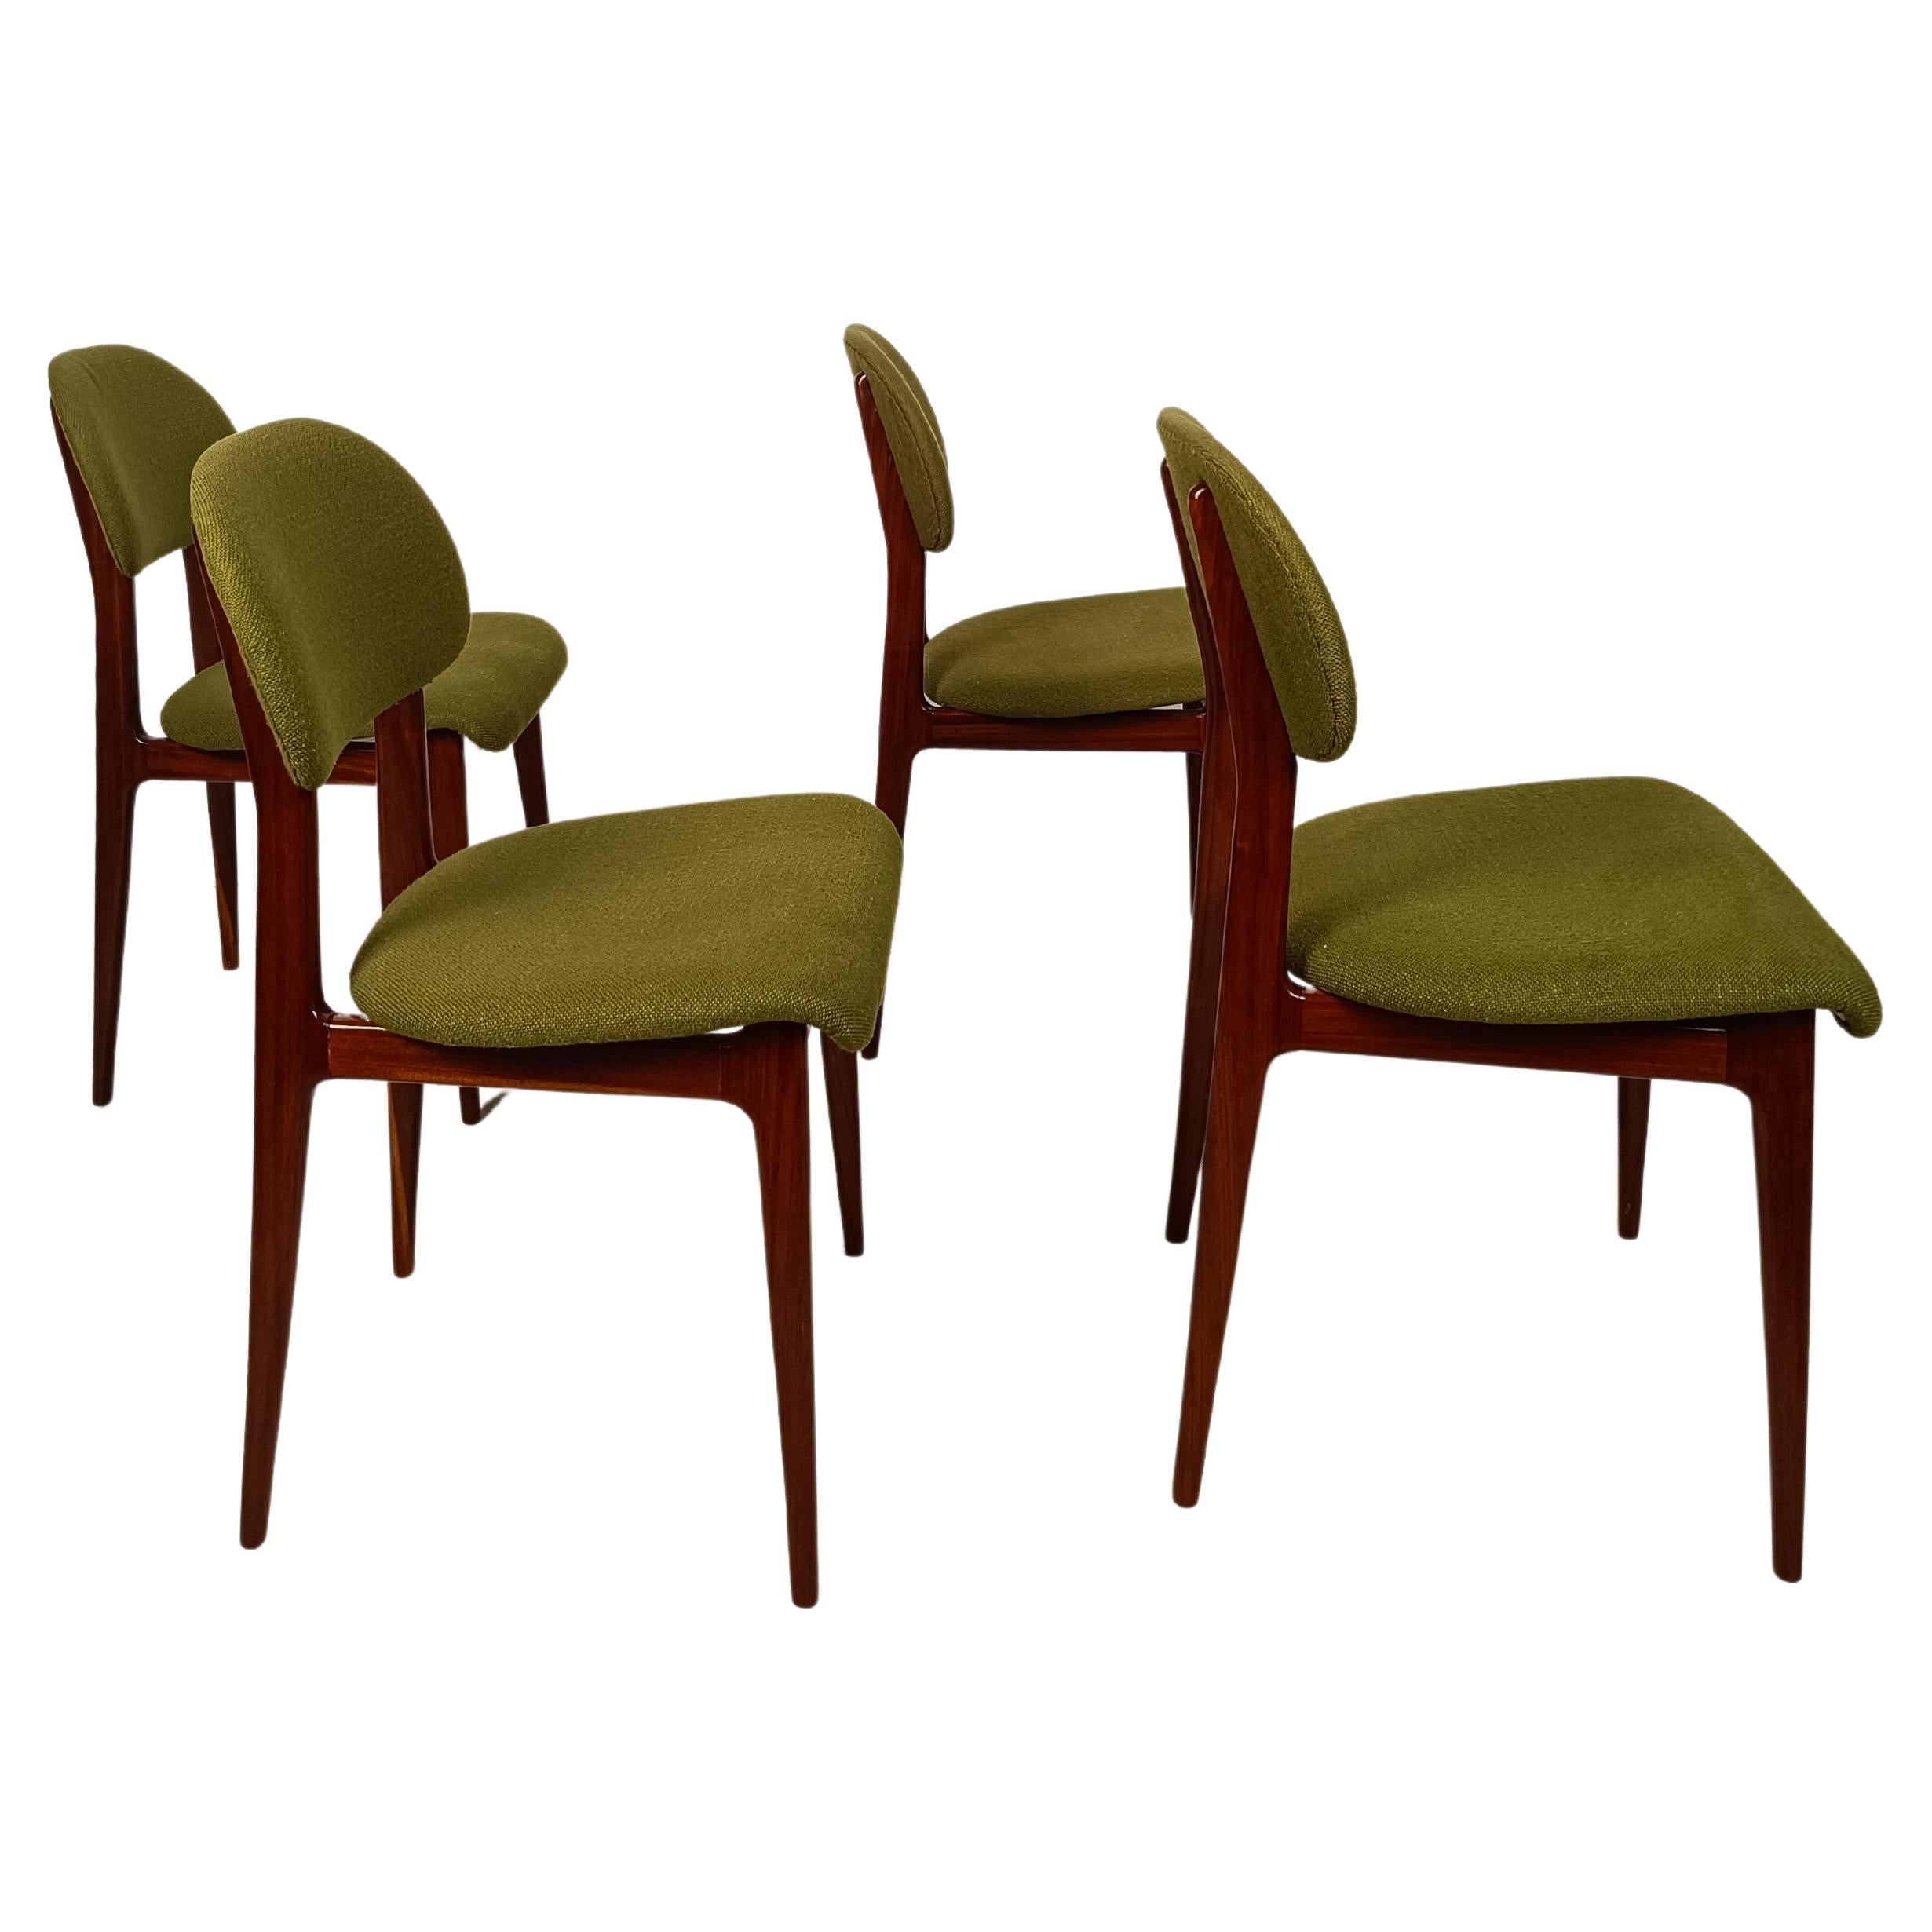 Italian Midcentury Chairs Attributed to Carlo Hauner and Martin Eisler, 1960s